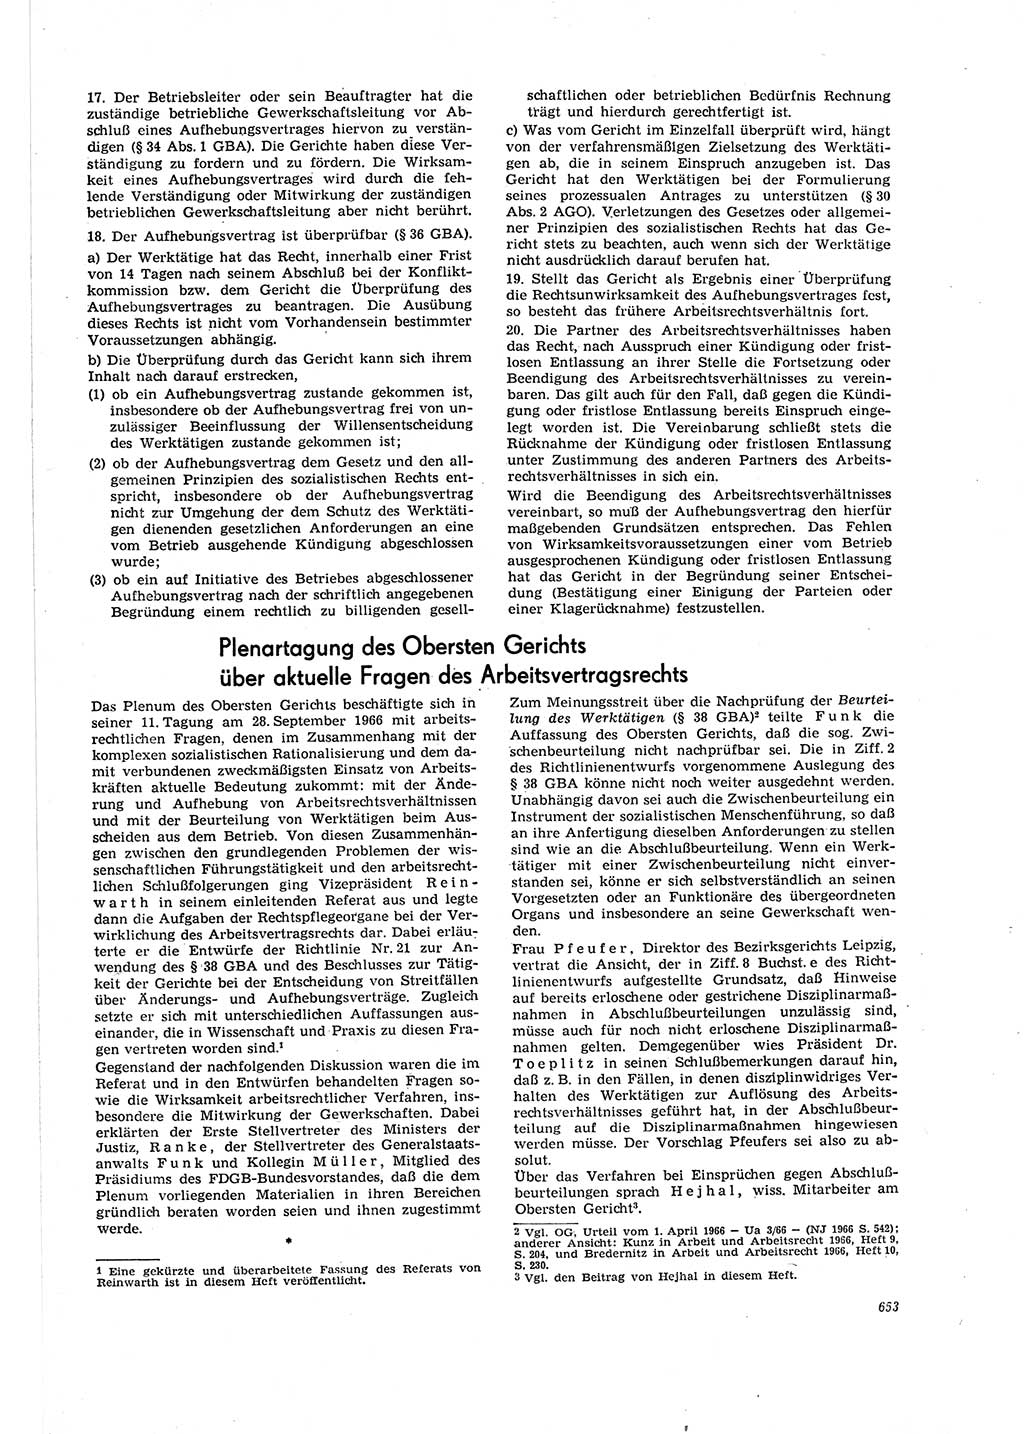 Neue Justiz (NJ), Zeitschrift für Recht und Rechtswissenschaft [Deutsche Demokratische Republik (DDR)], 20. Jahrgang 1966, Seite 653 (NJ DDR 1966, S. 653)